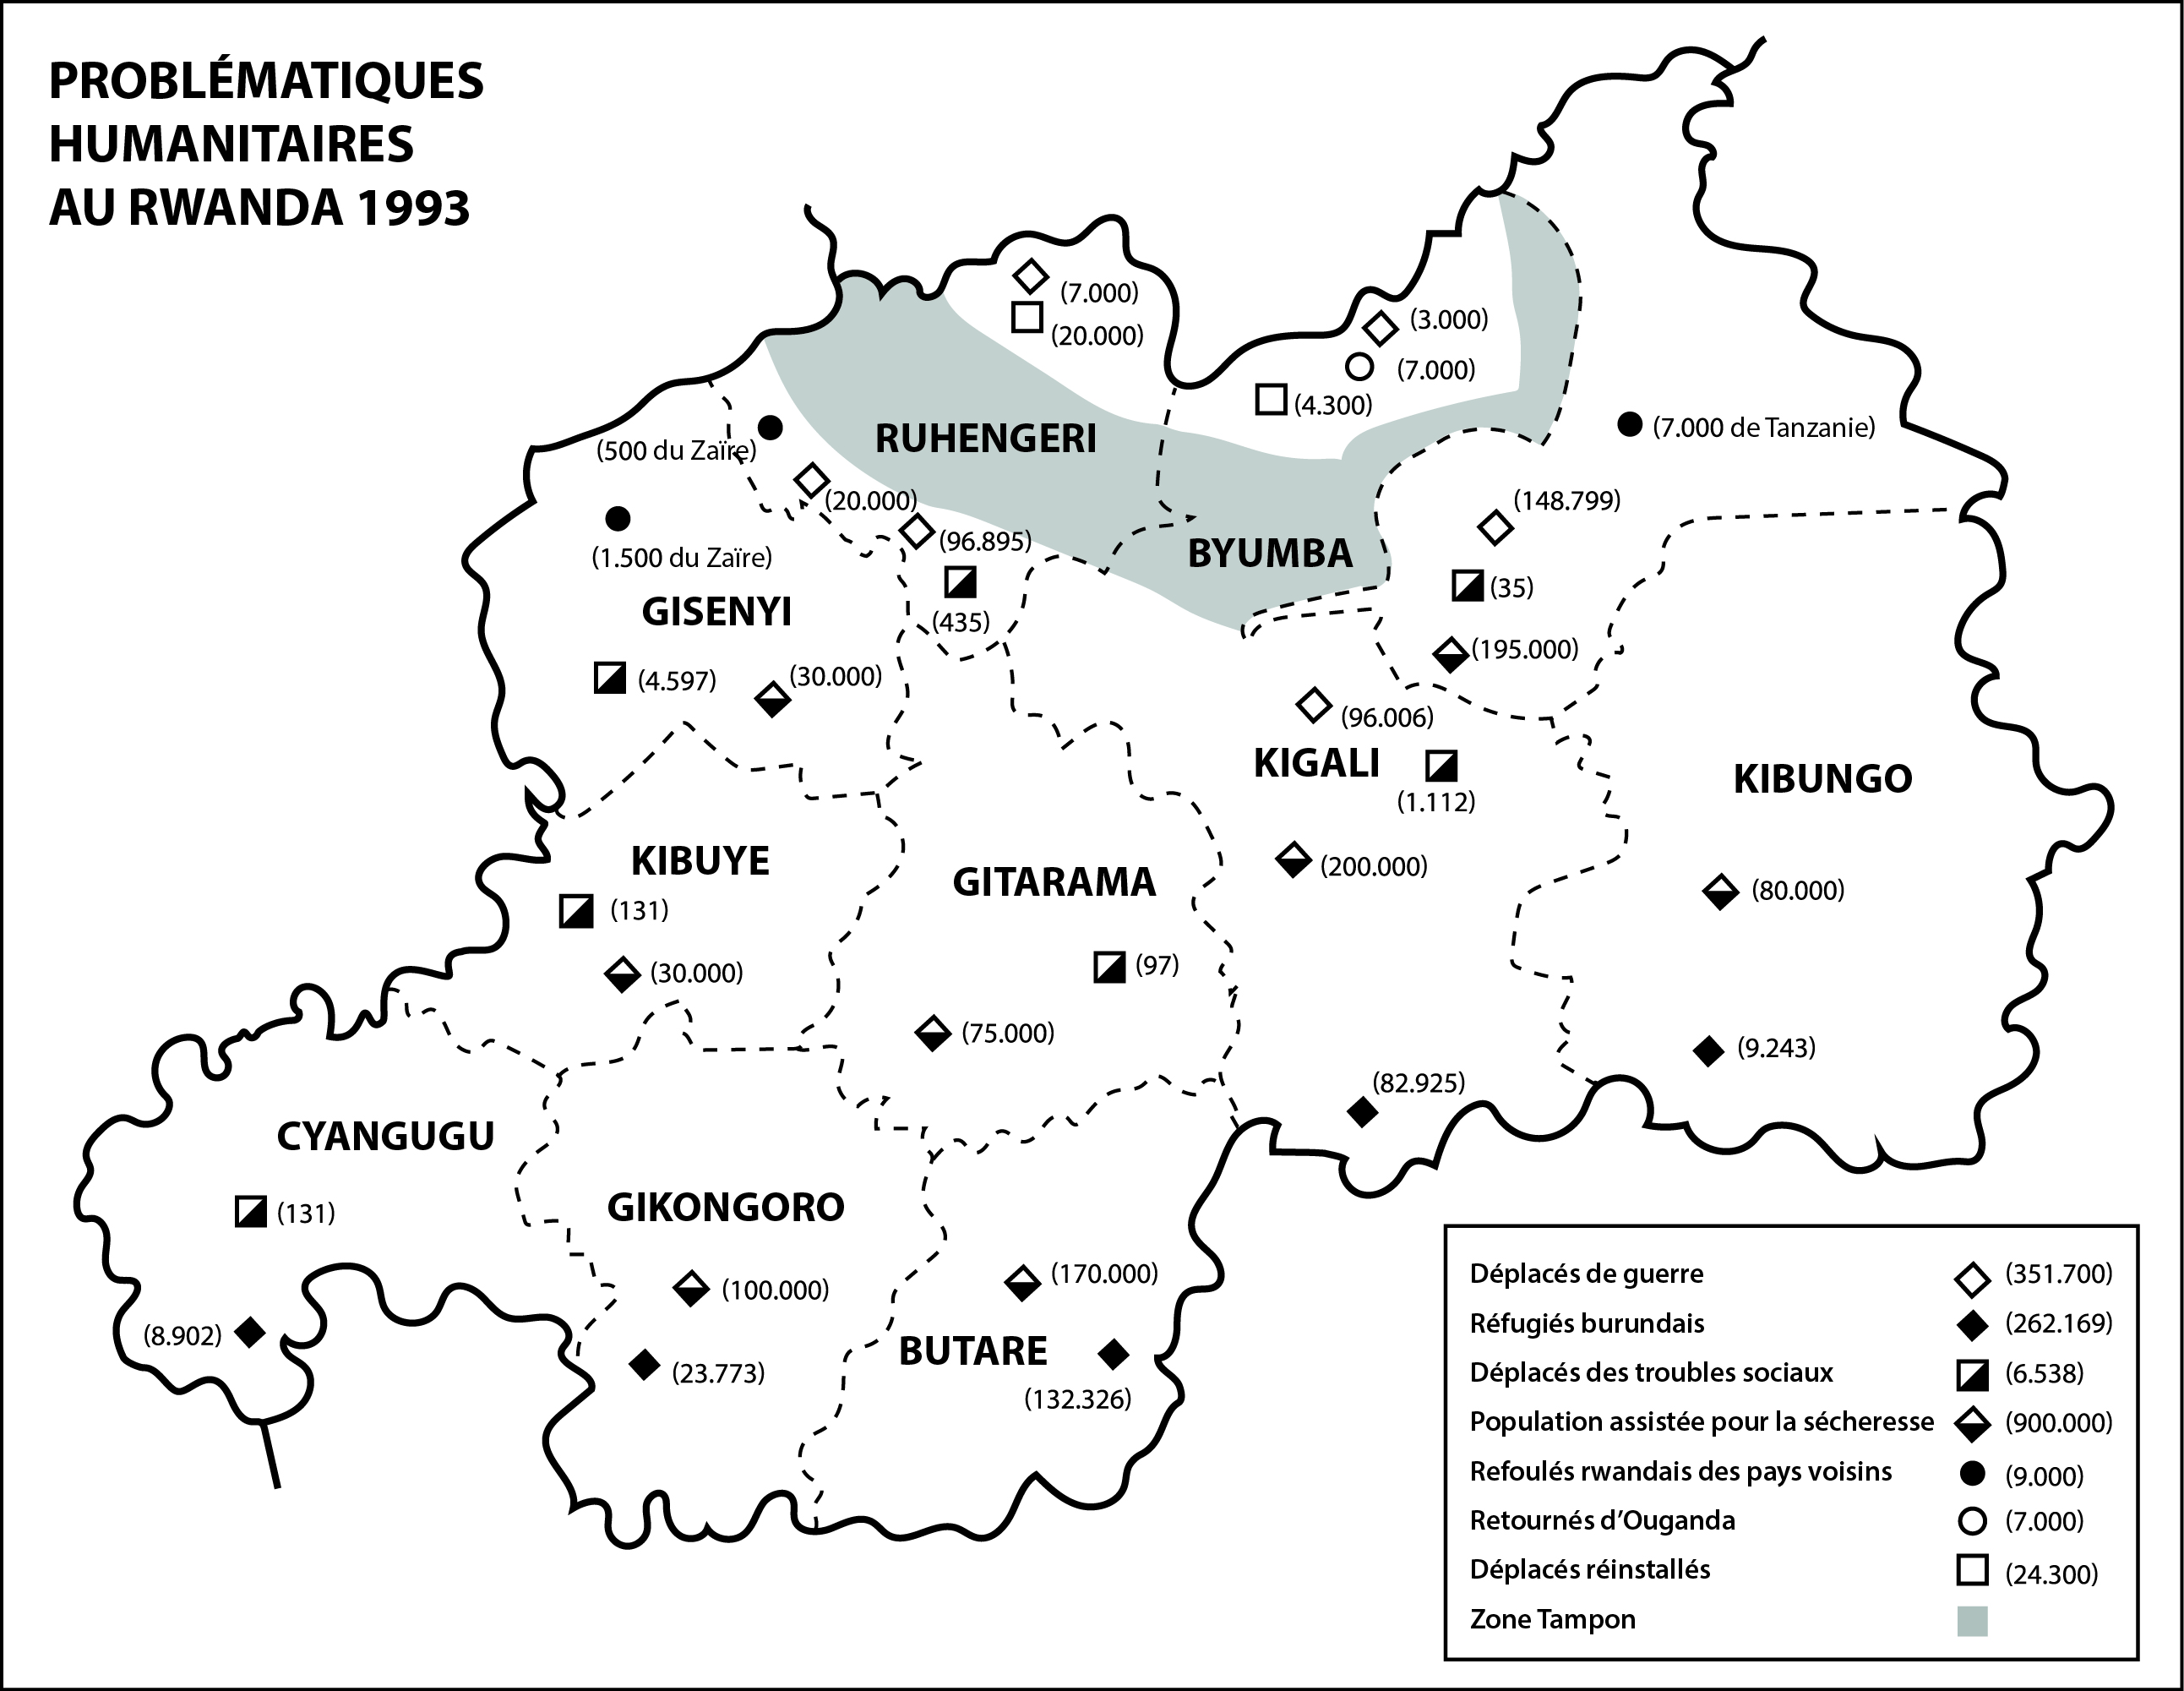 Problématiques humanitaires au Rwanda 1993